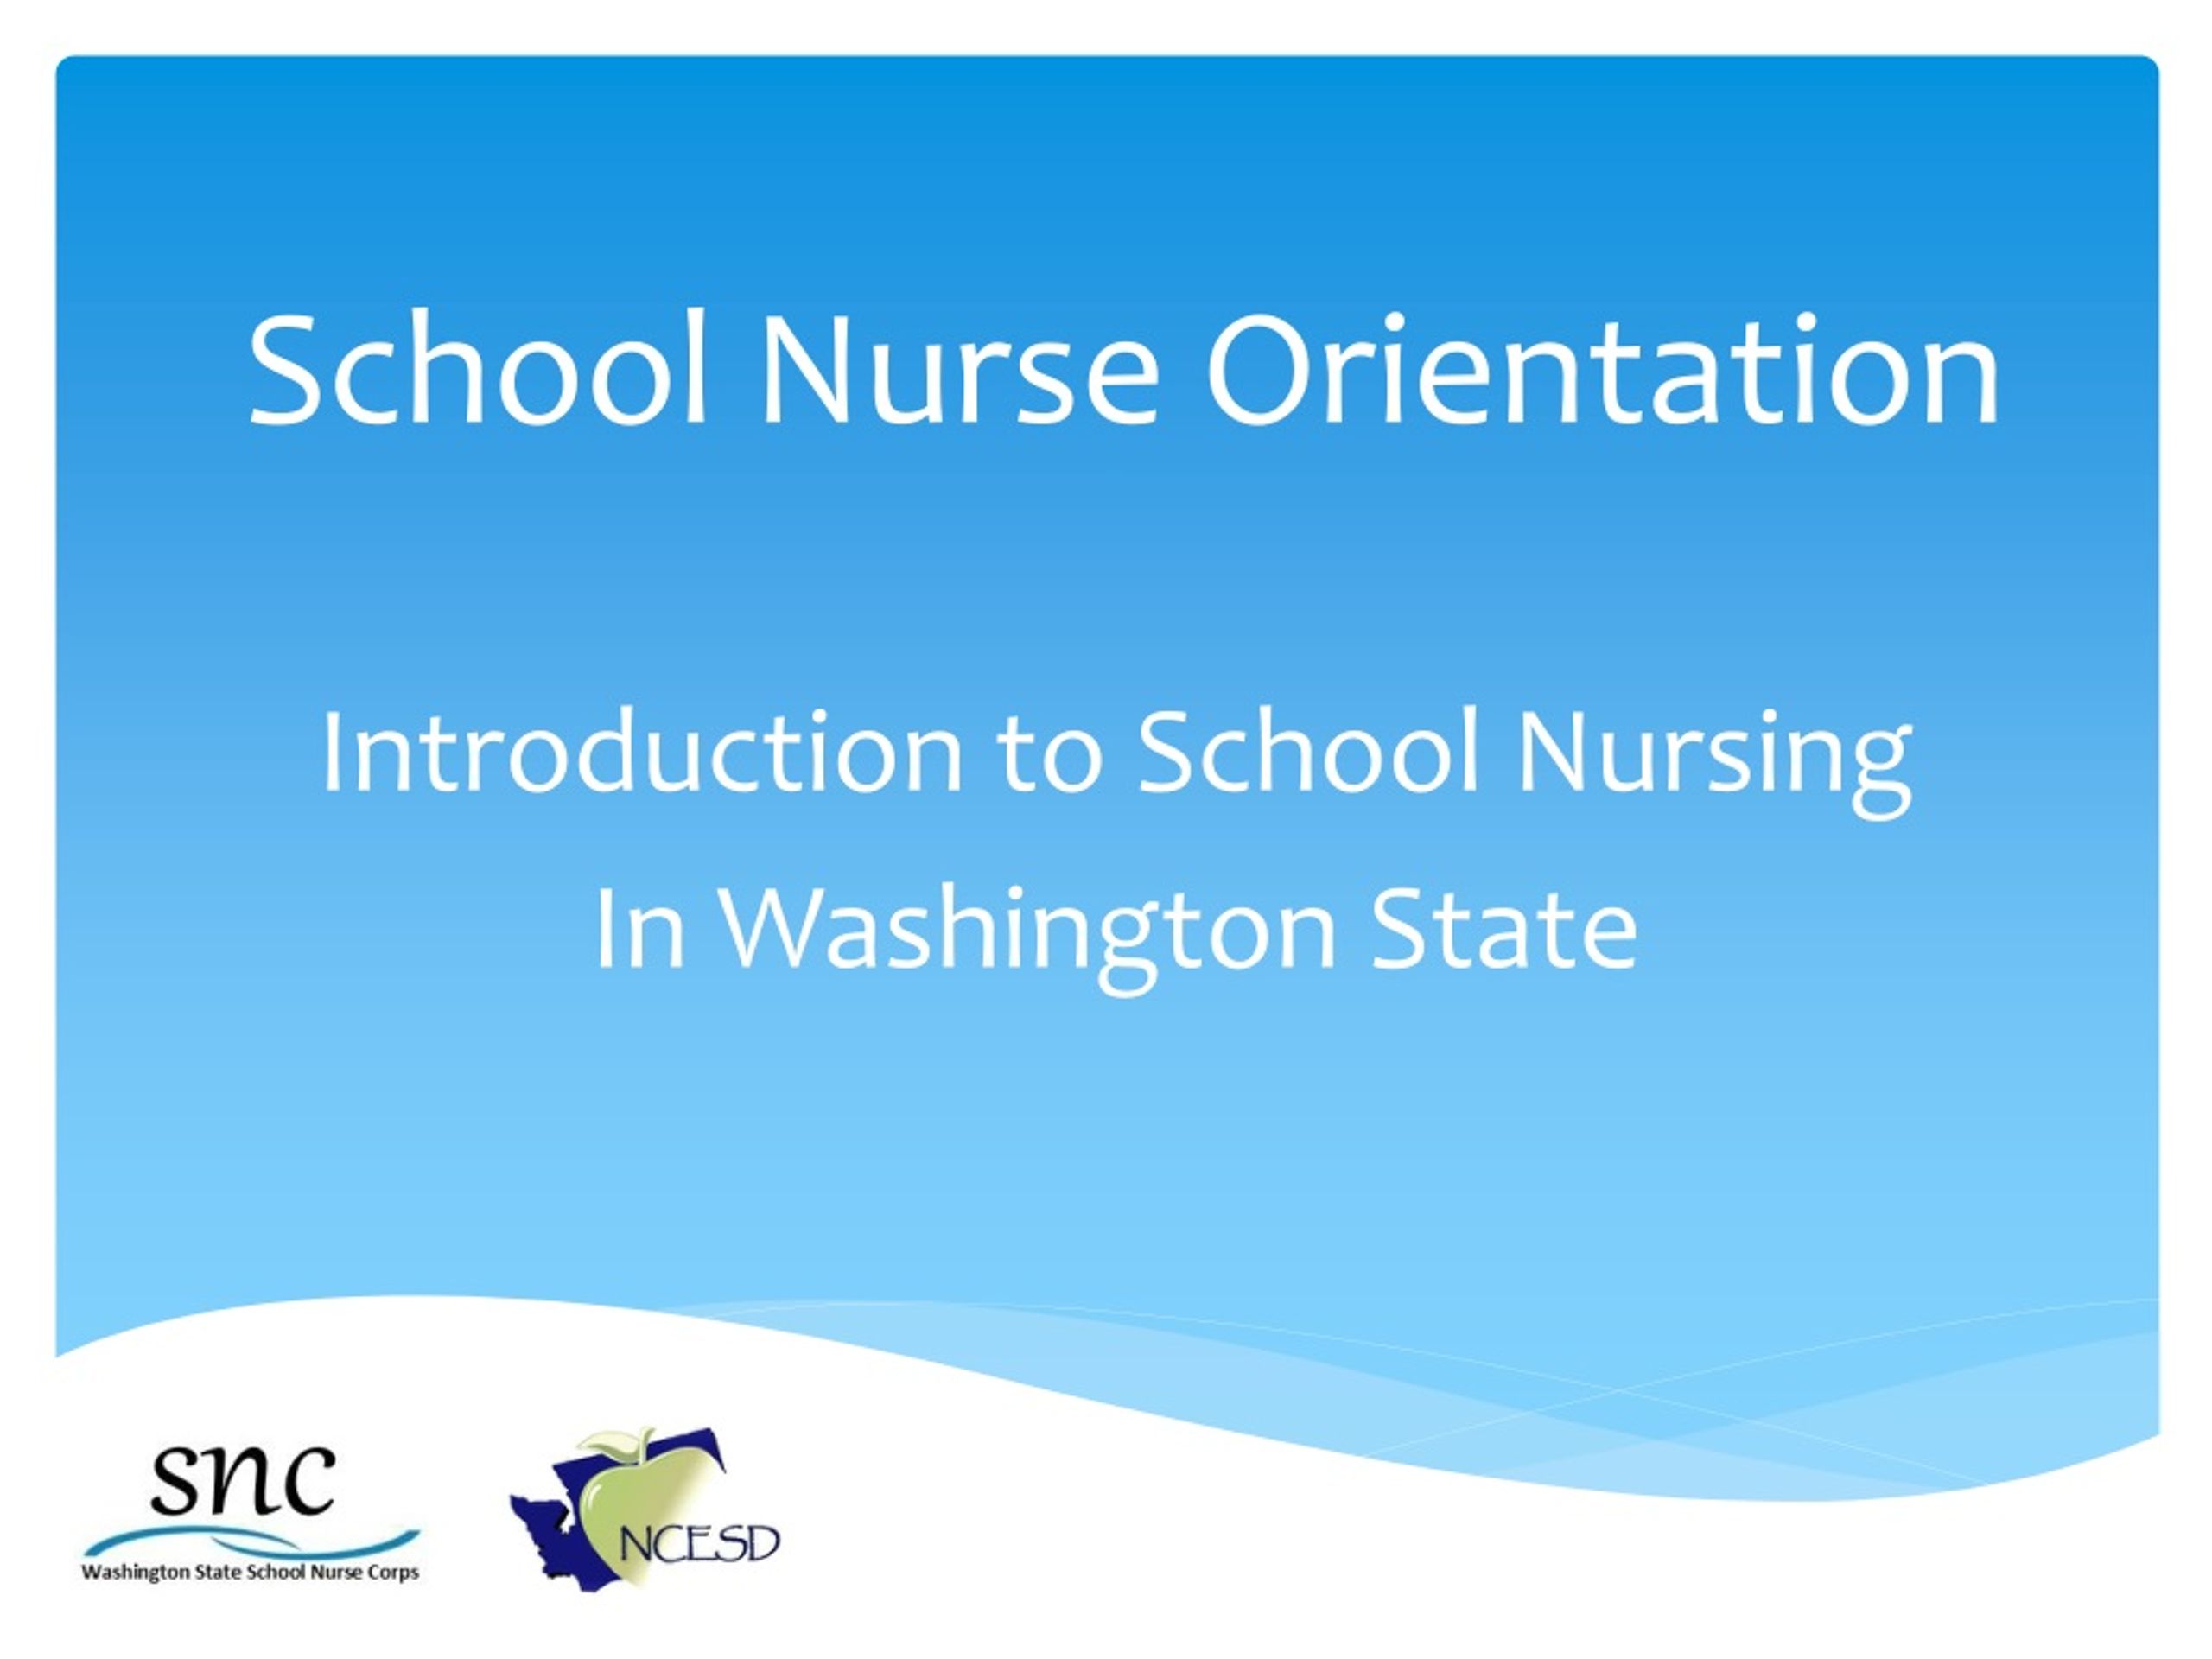 new school nurse orientation package